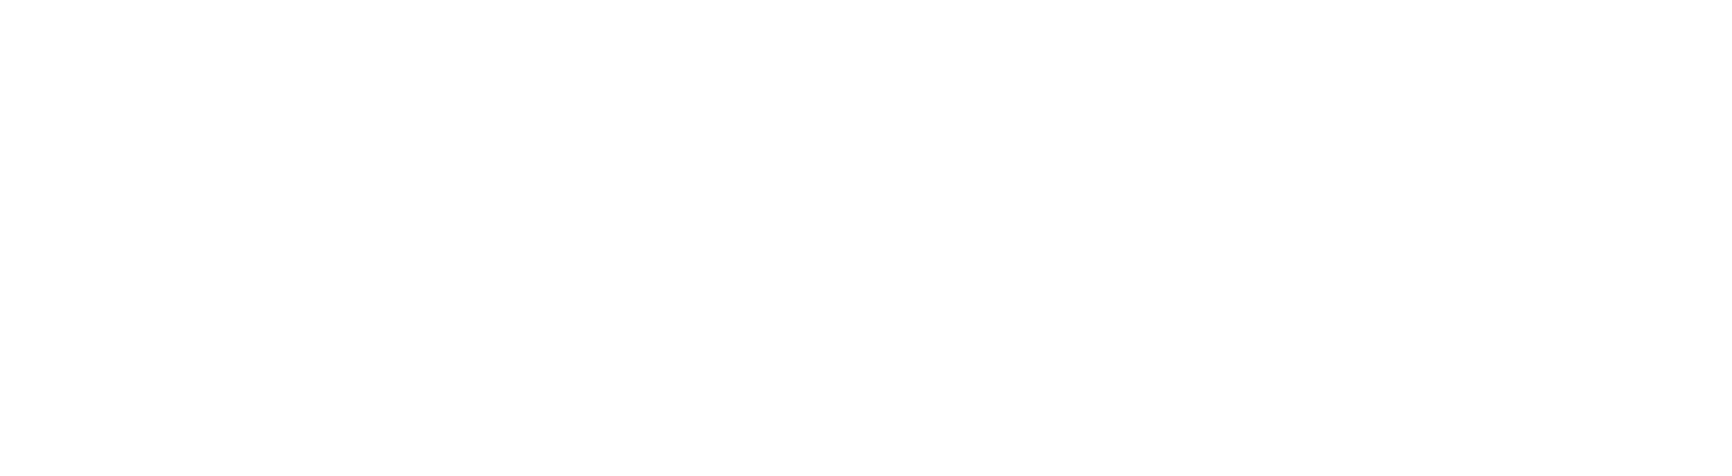 China Telecom logo grand pour les fonds sombres (PNG transparent)